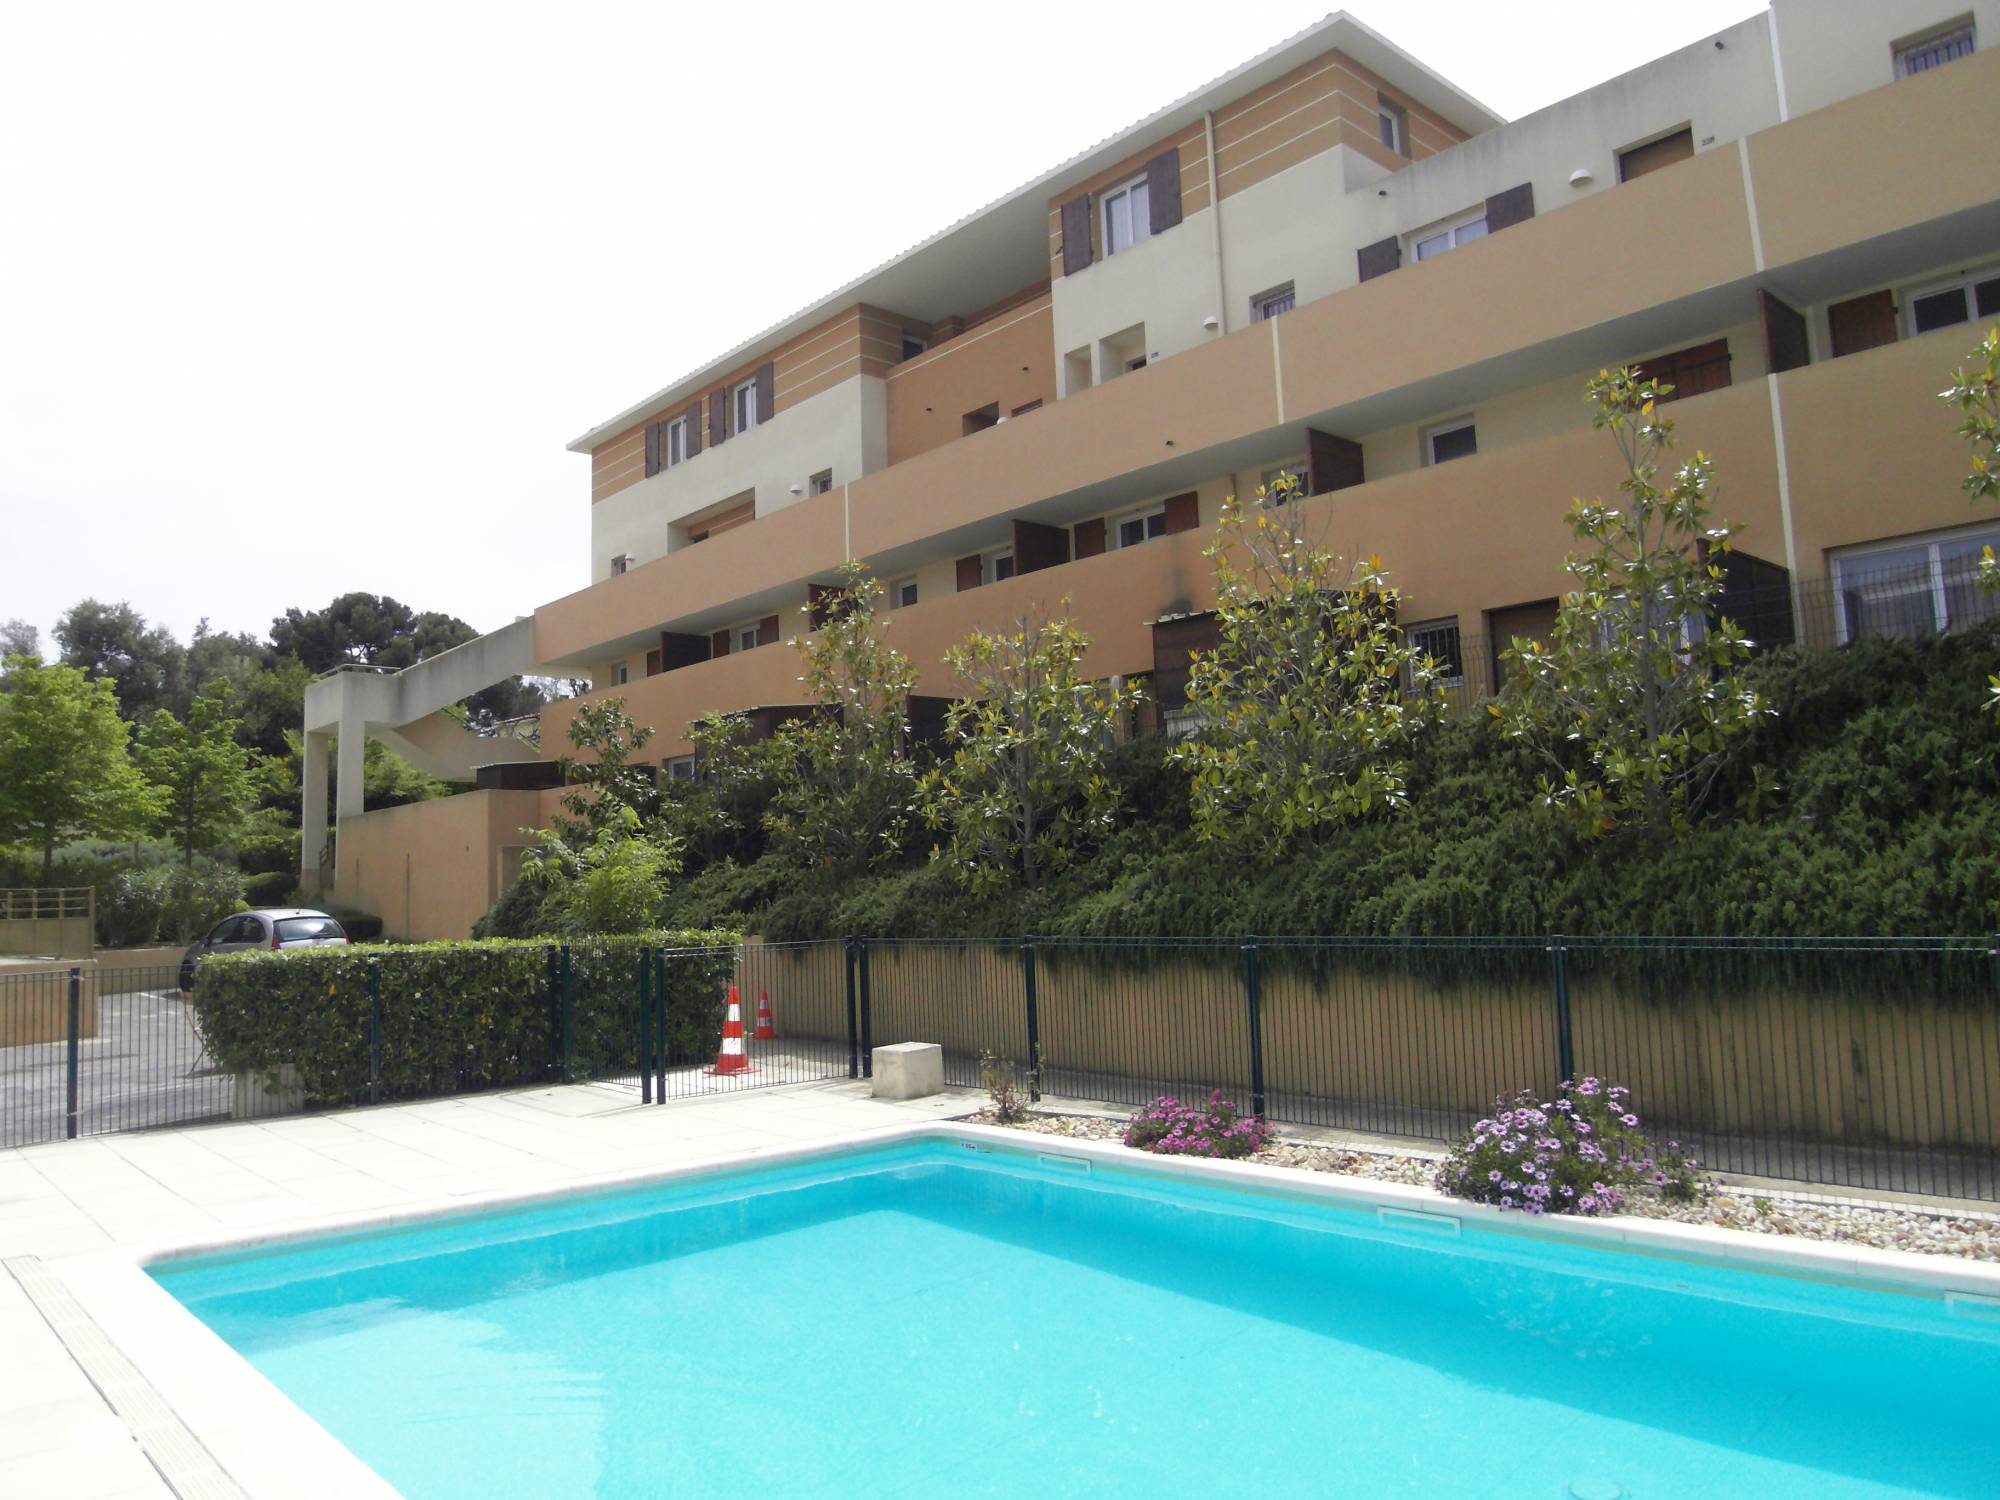 résidence avec piscine A louer appartement 4 pièces de 82 m² en duplex avec terrasse et deux places de parking privatives 13380 Plan de Cuques 